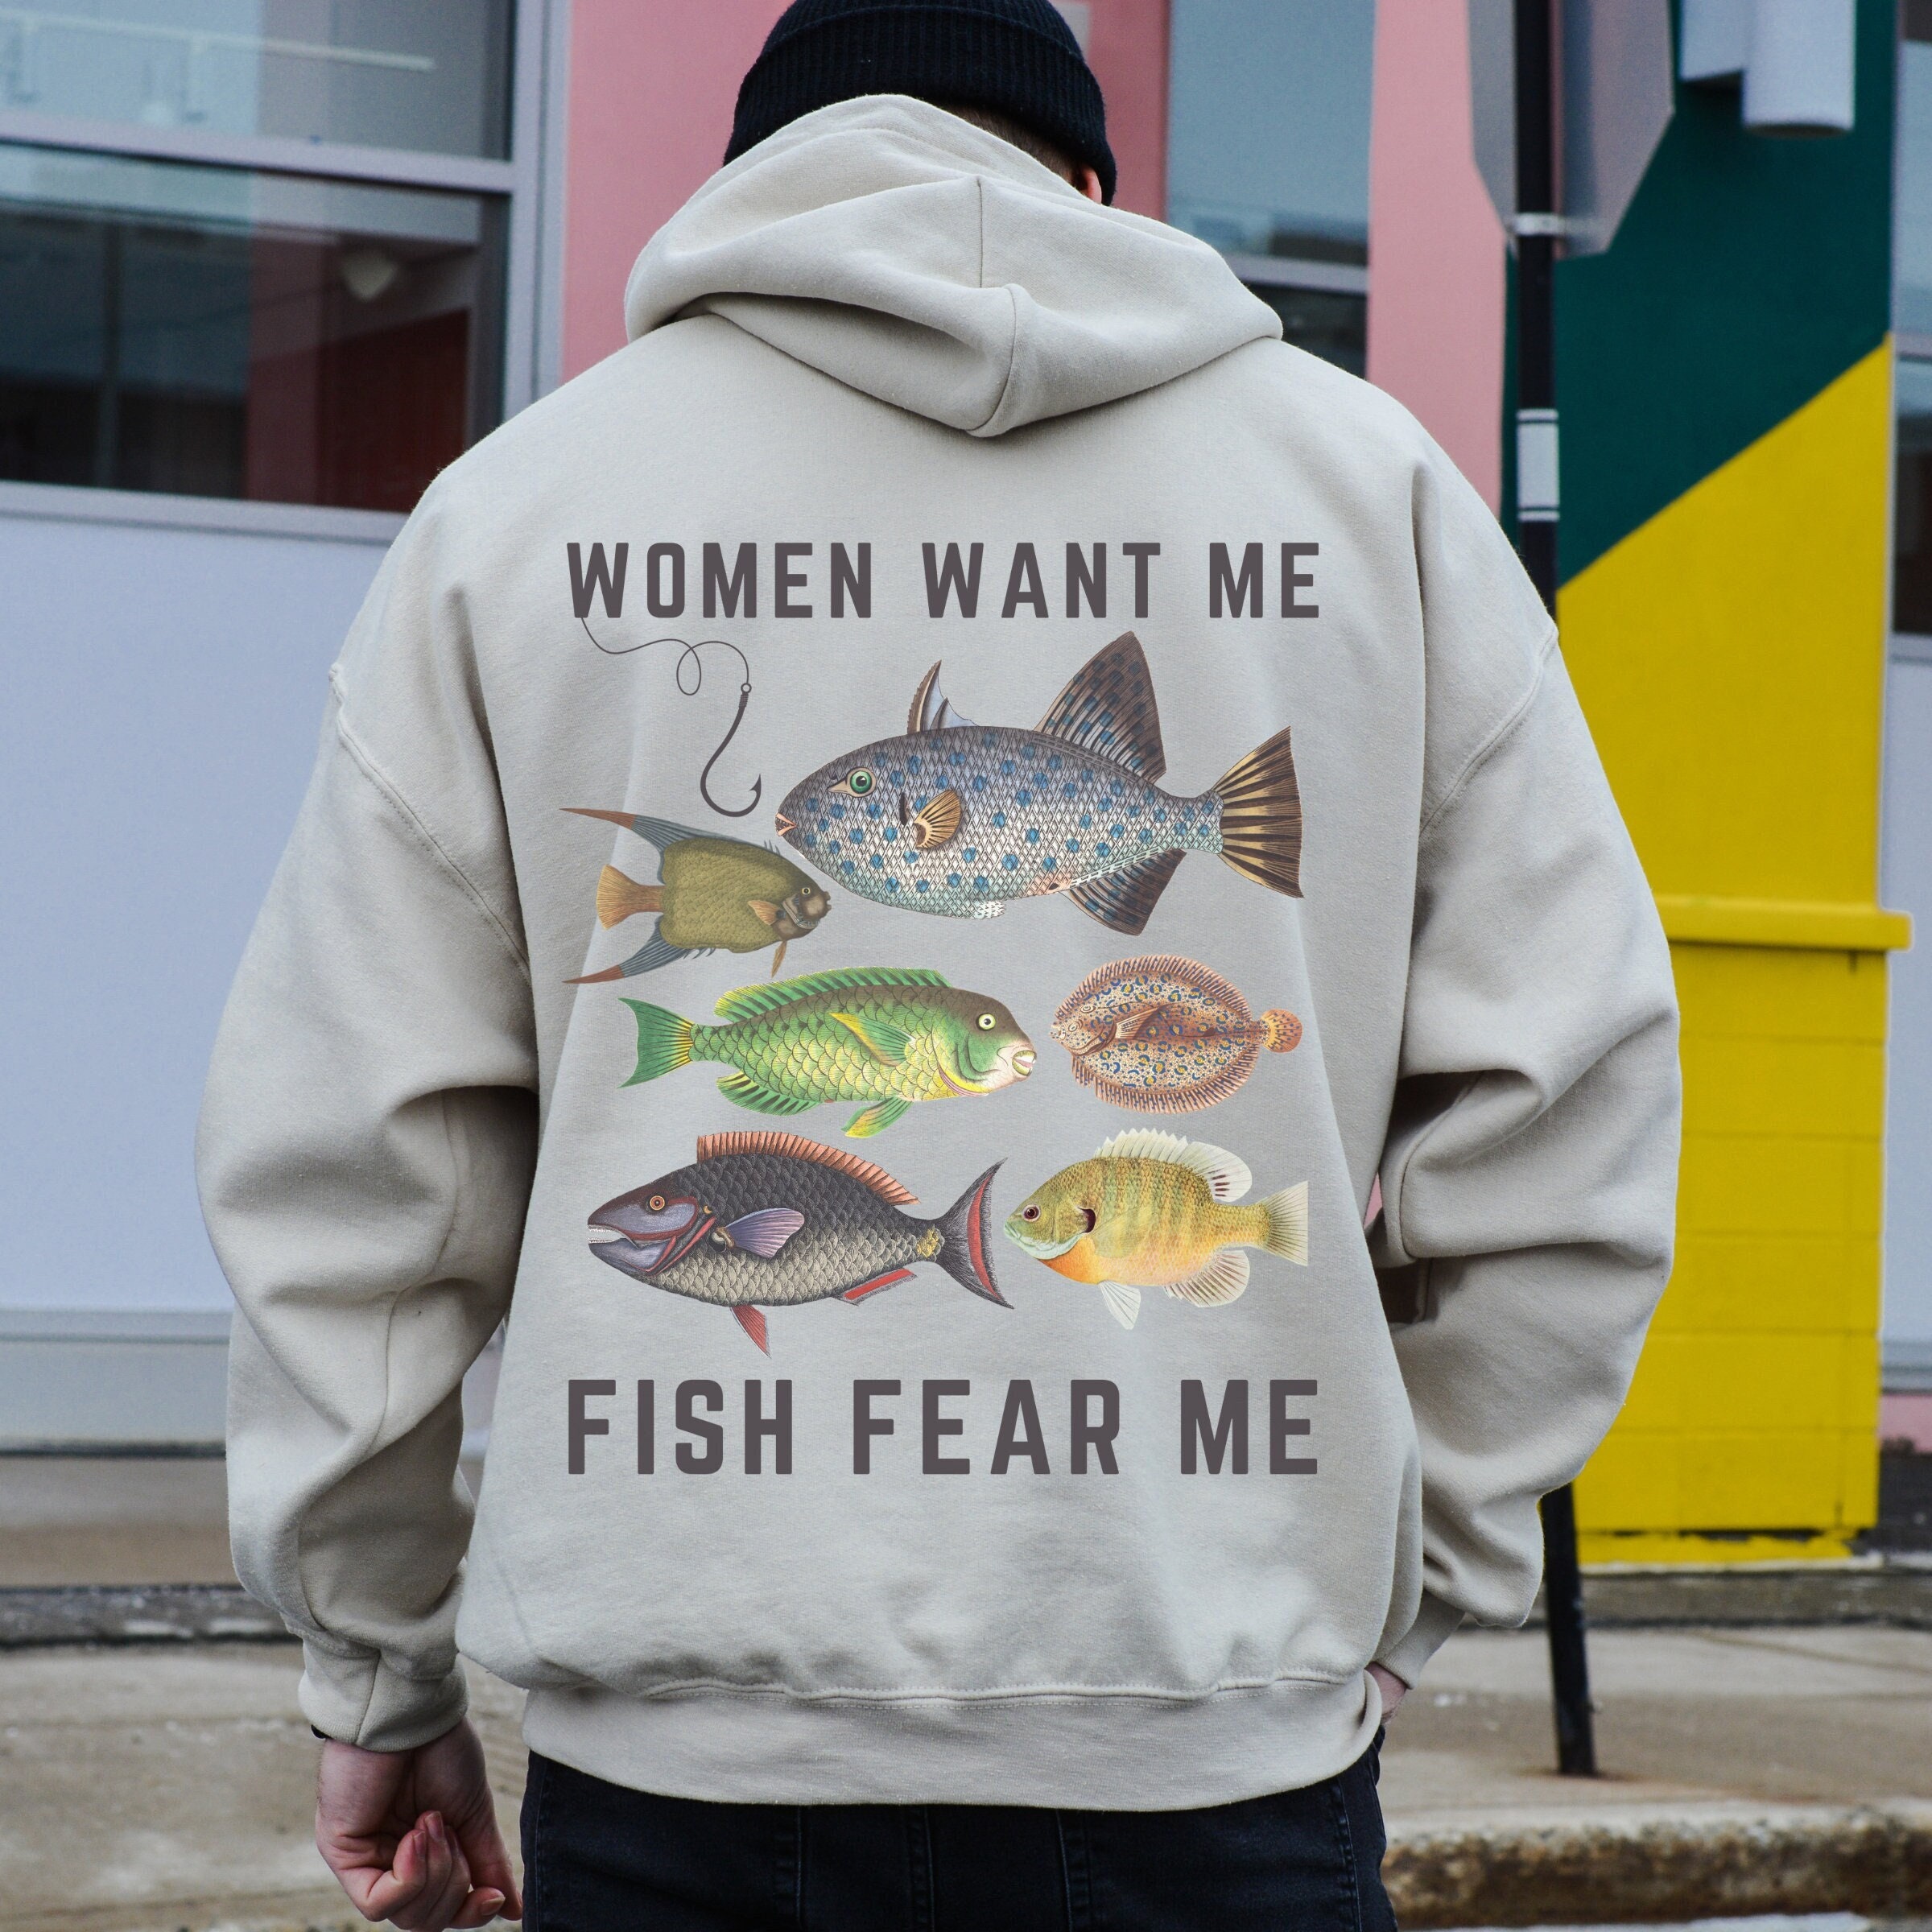 Women Want Me Fish Fear Me Shirt Ironic Shirt Shirts That Go Hard